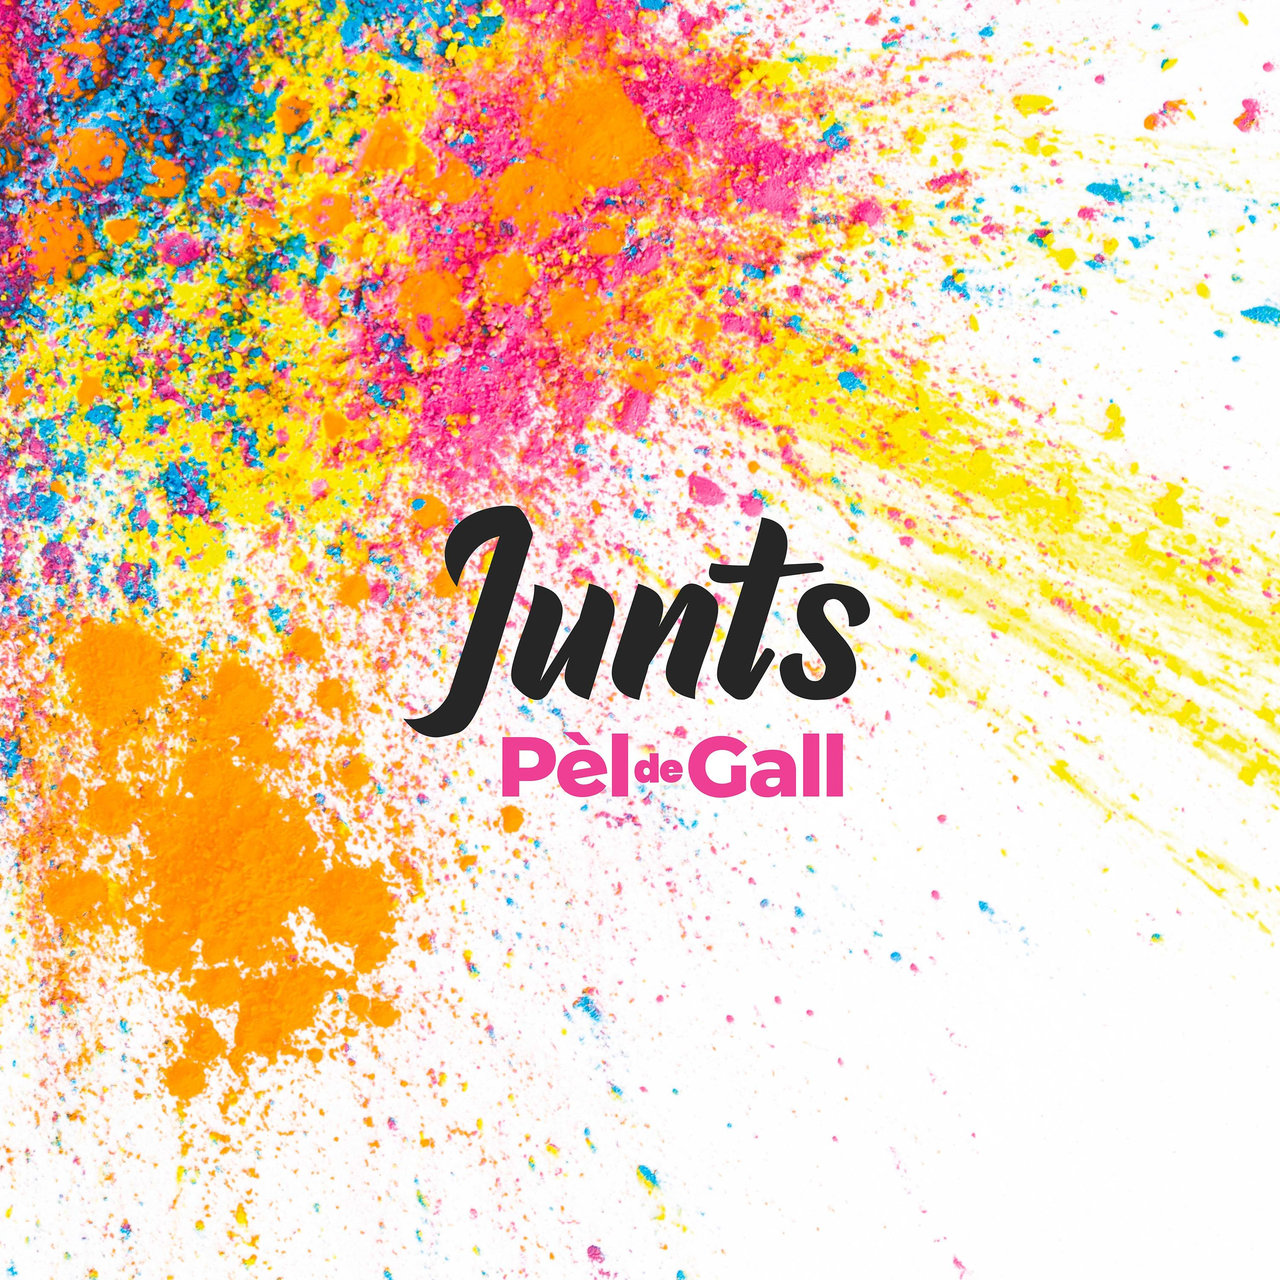 Pèl de Gall — Junts cover artwork